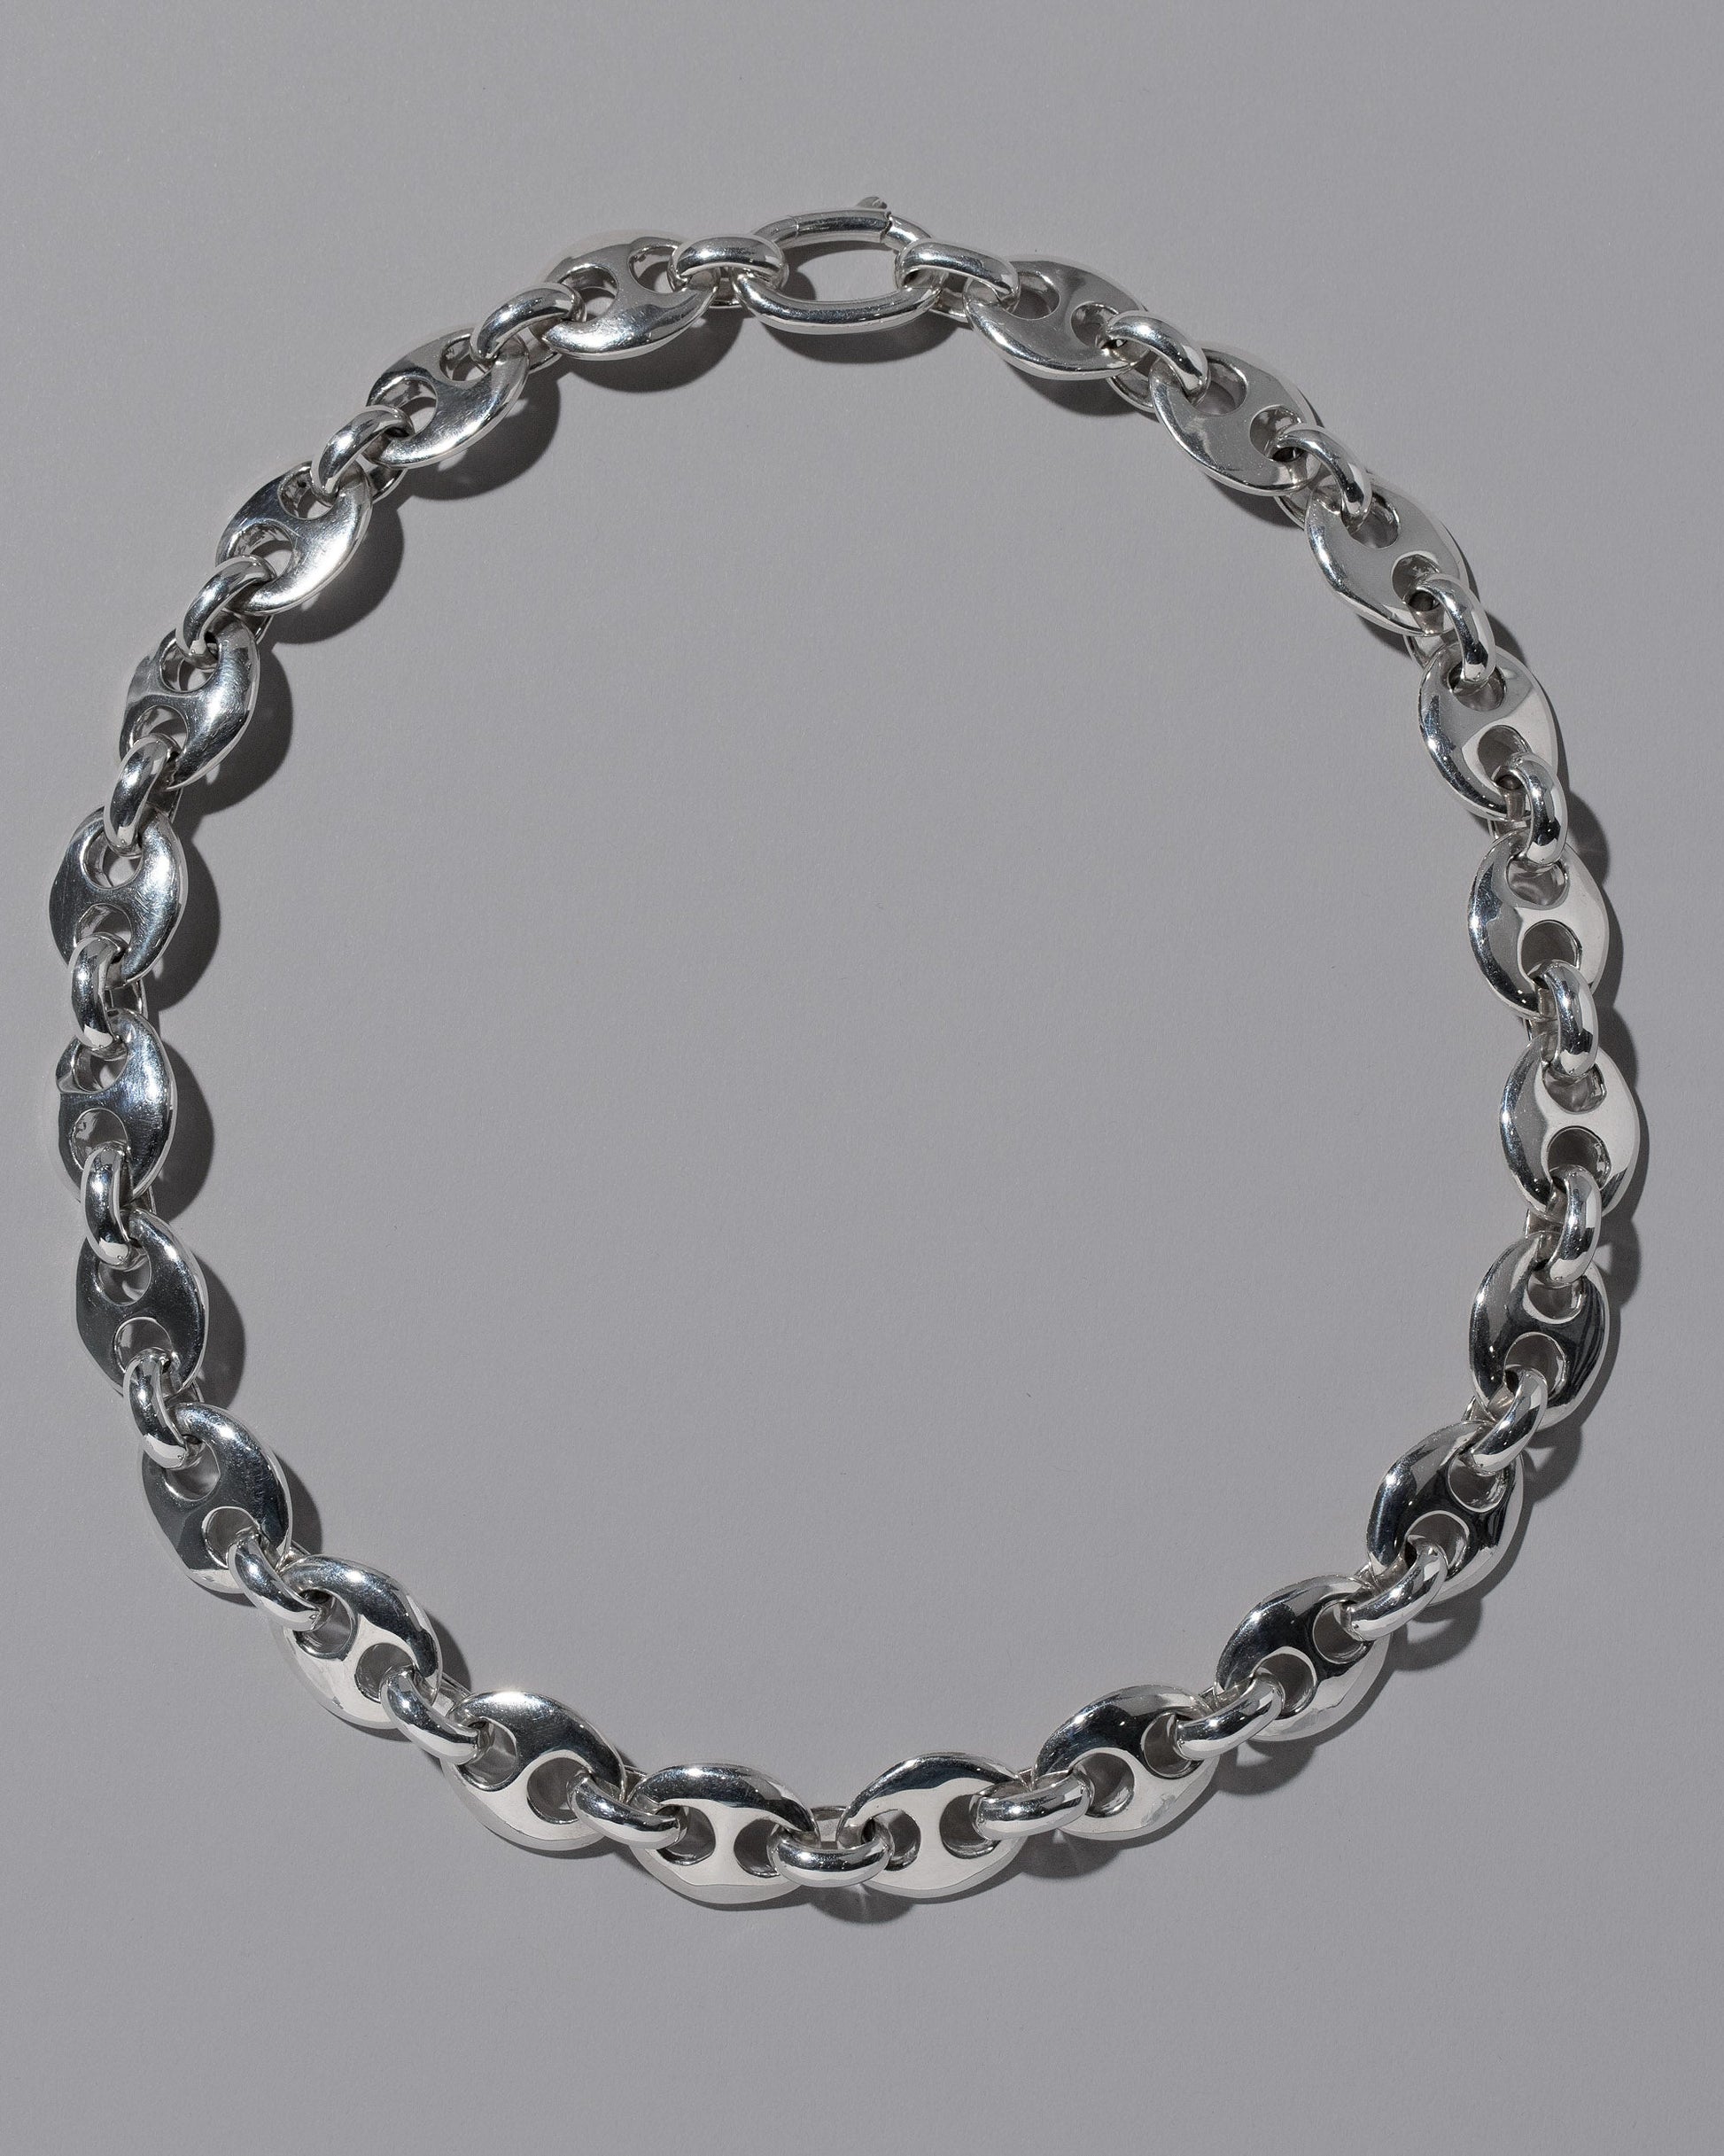 CRZM Sterling Silver Bedrock Bracelet on light color background.